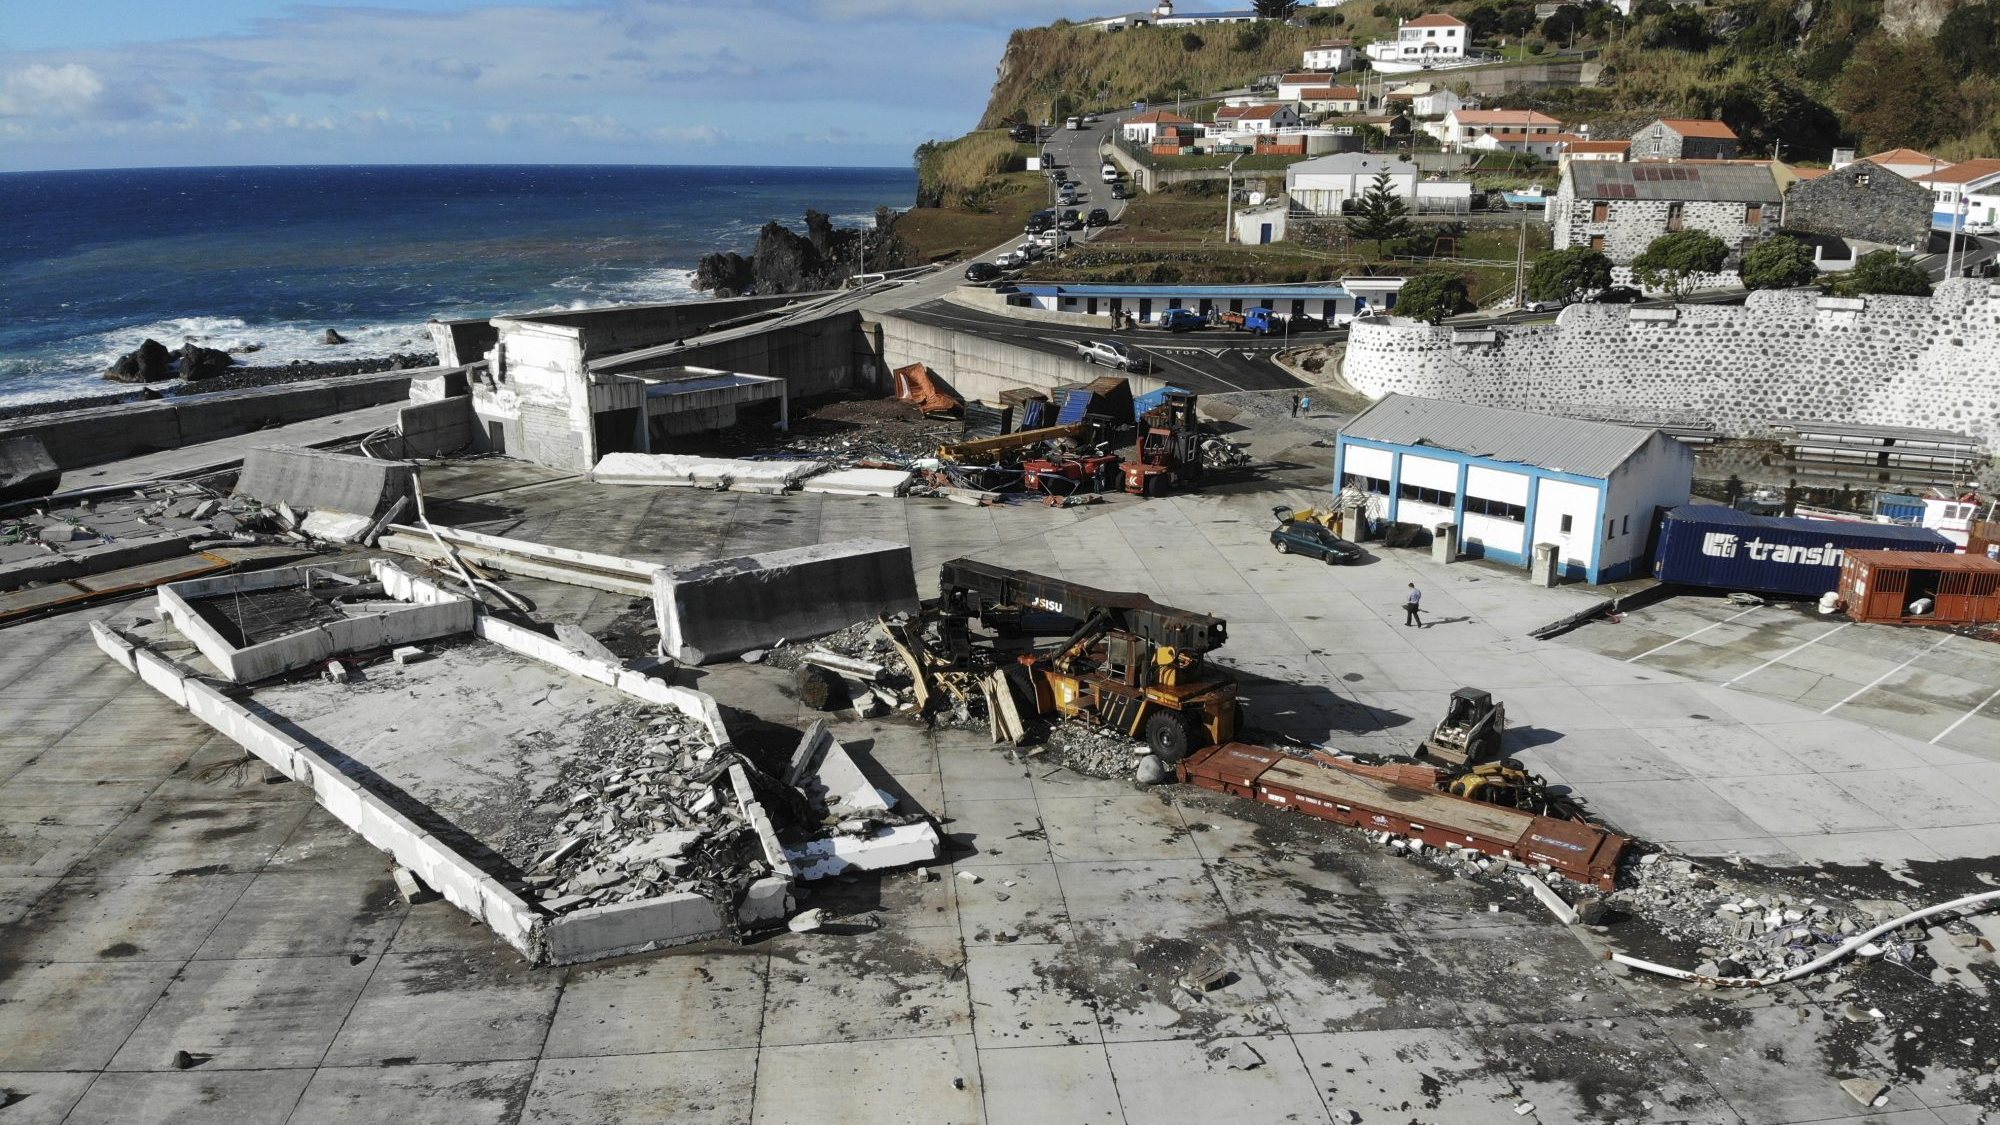 O molhe do porto das Flores, o único porto comercial da ilha, ficou destruído na sequência da passagem do furacão Lorenzo, em outubro de 2019